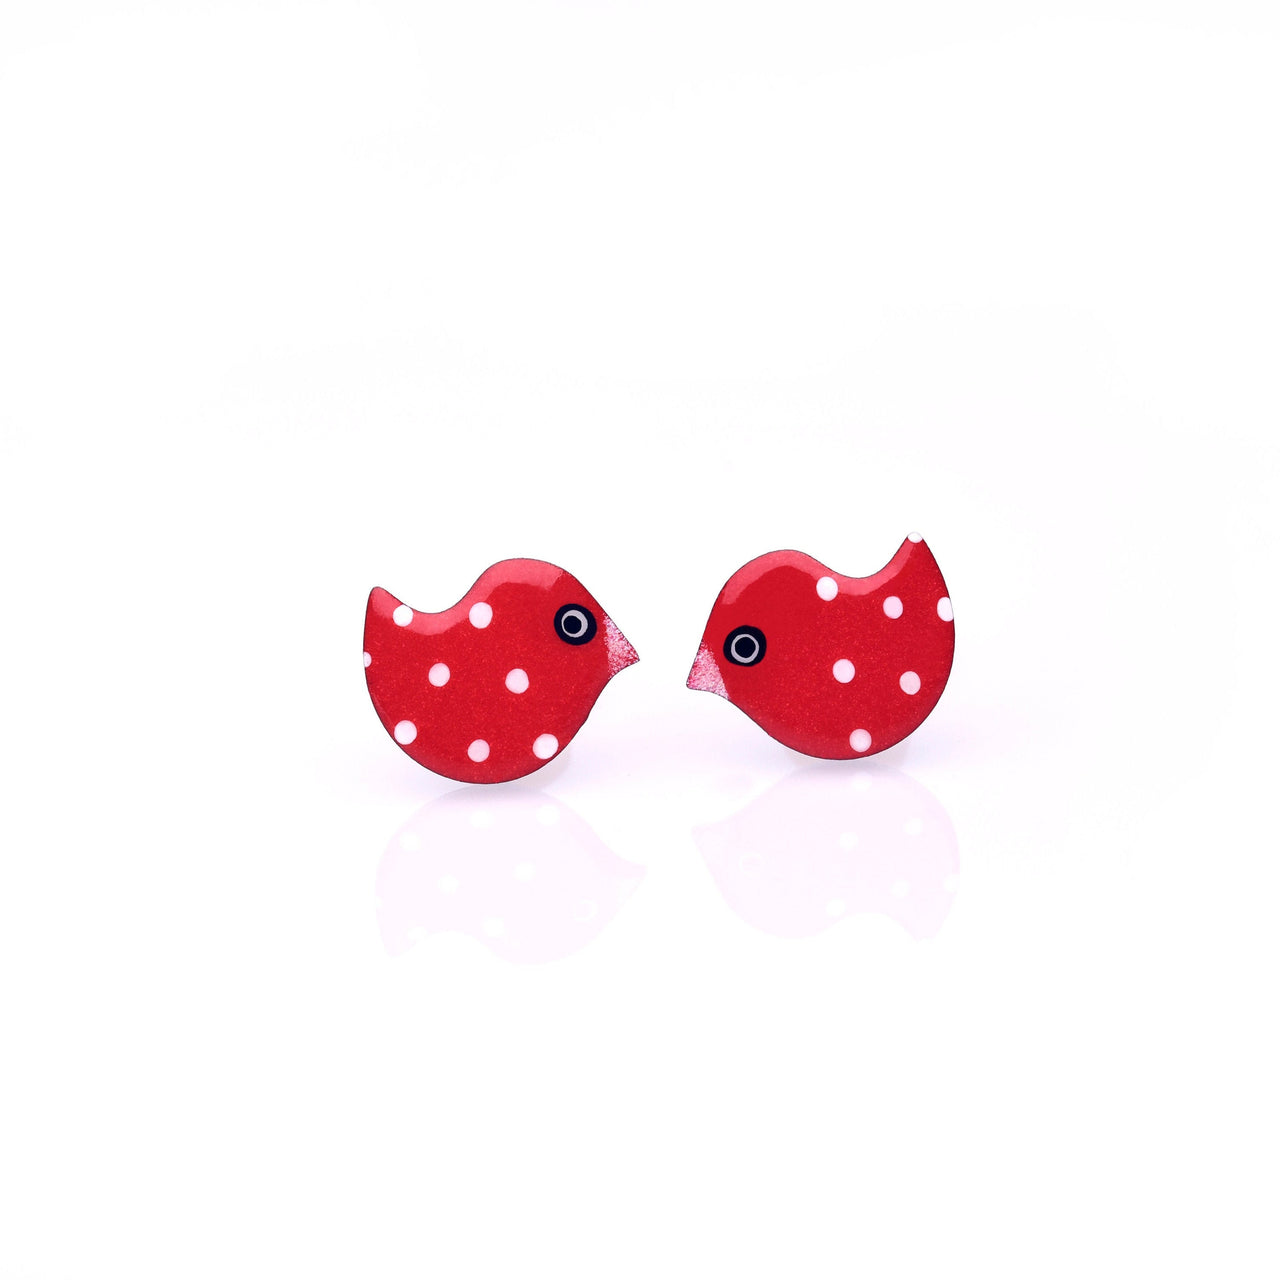 Polka Dot Red Chicks Stud Earrings